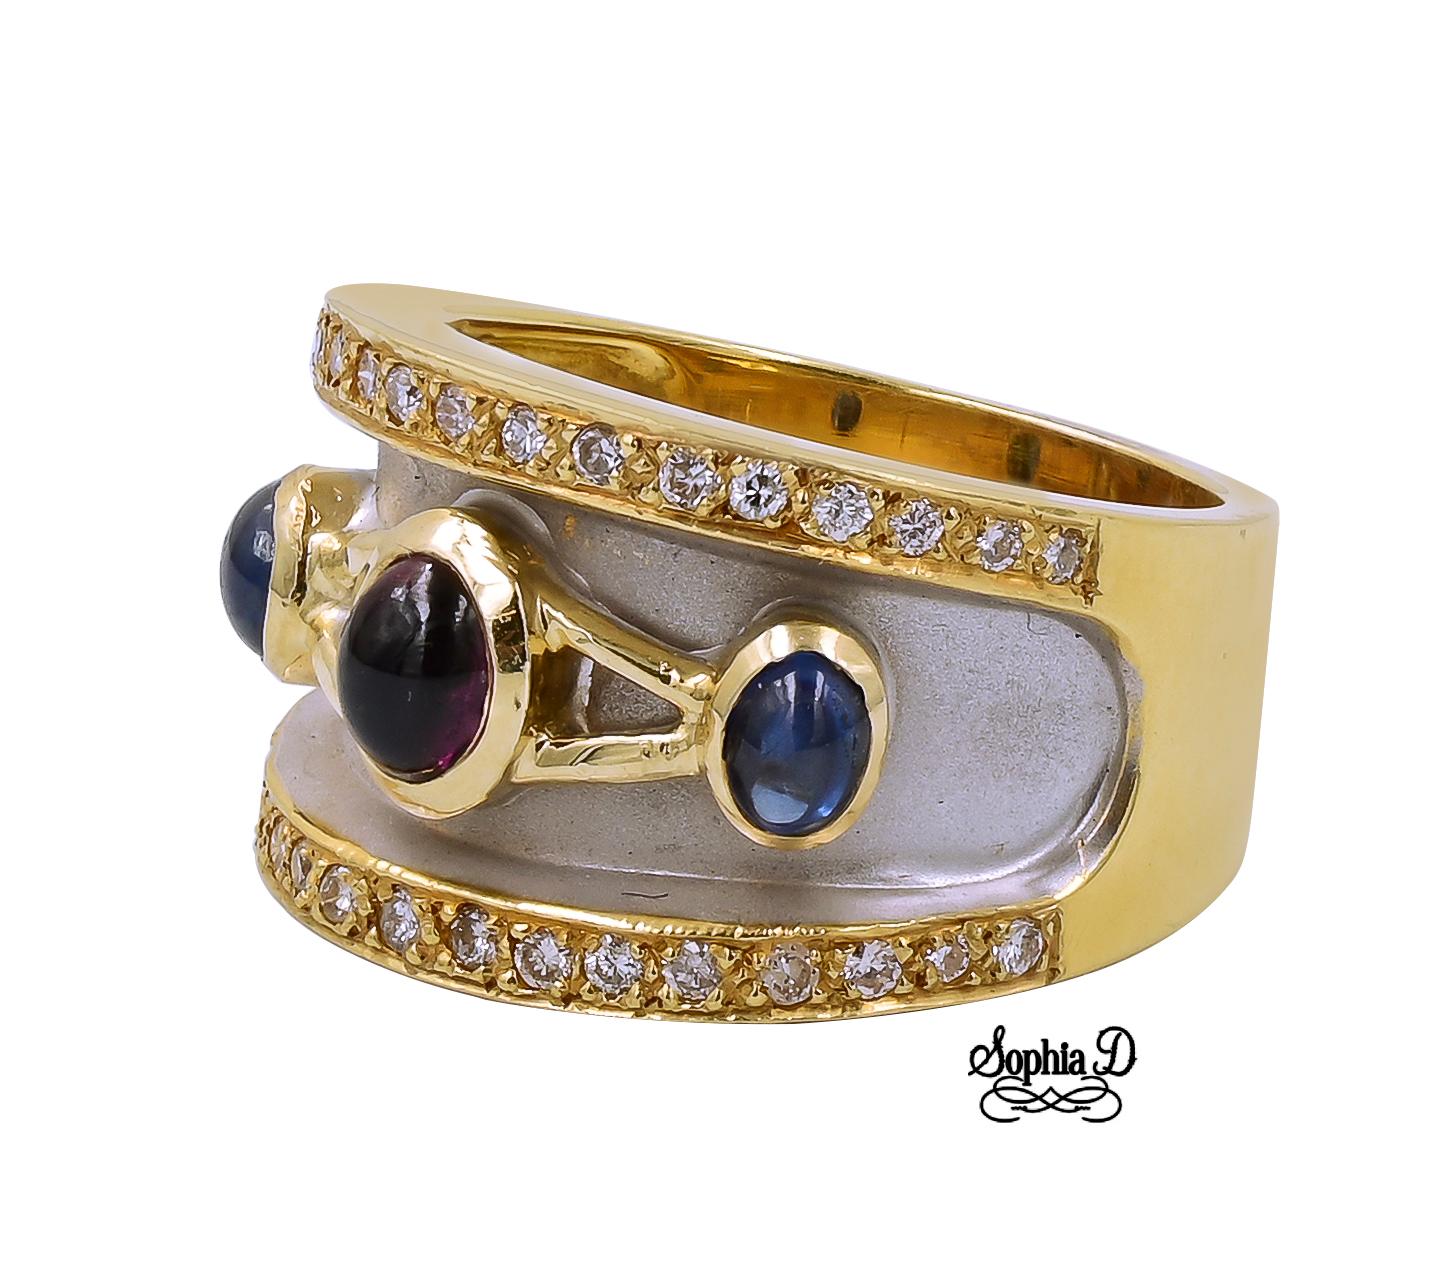 Ring aus 18 Karat Gelbgold mit Saphir, Rubin und Diamant.

Sophia D von Joseph Dardashti LTD ist seit 35 Jahren weltweit bekannt und lässt sich vom klassischen Art-Déco-Design inspirieren, das mit modernen Fertigungstechniken verschmilzt.  